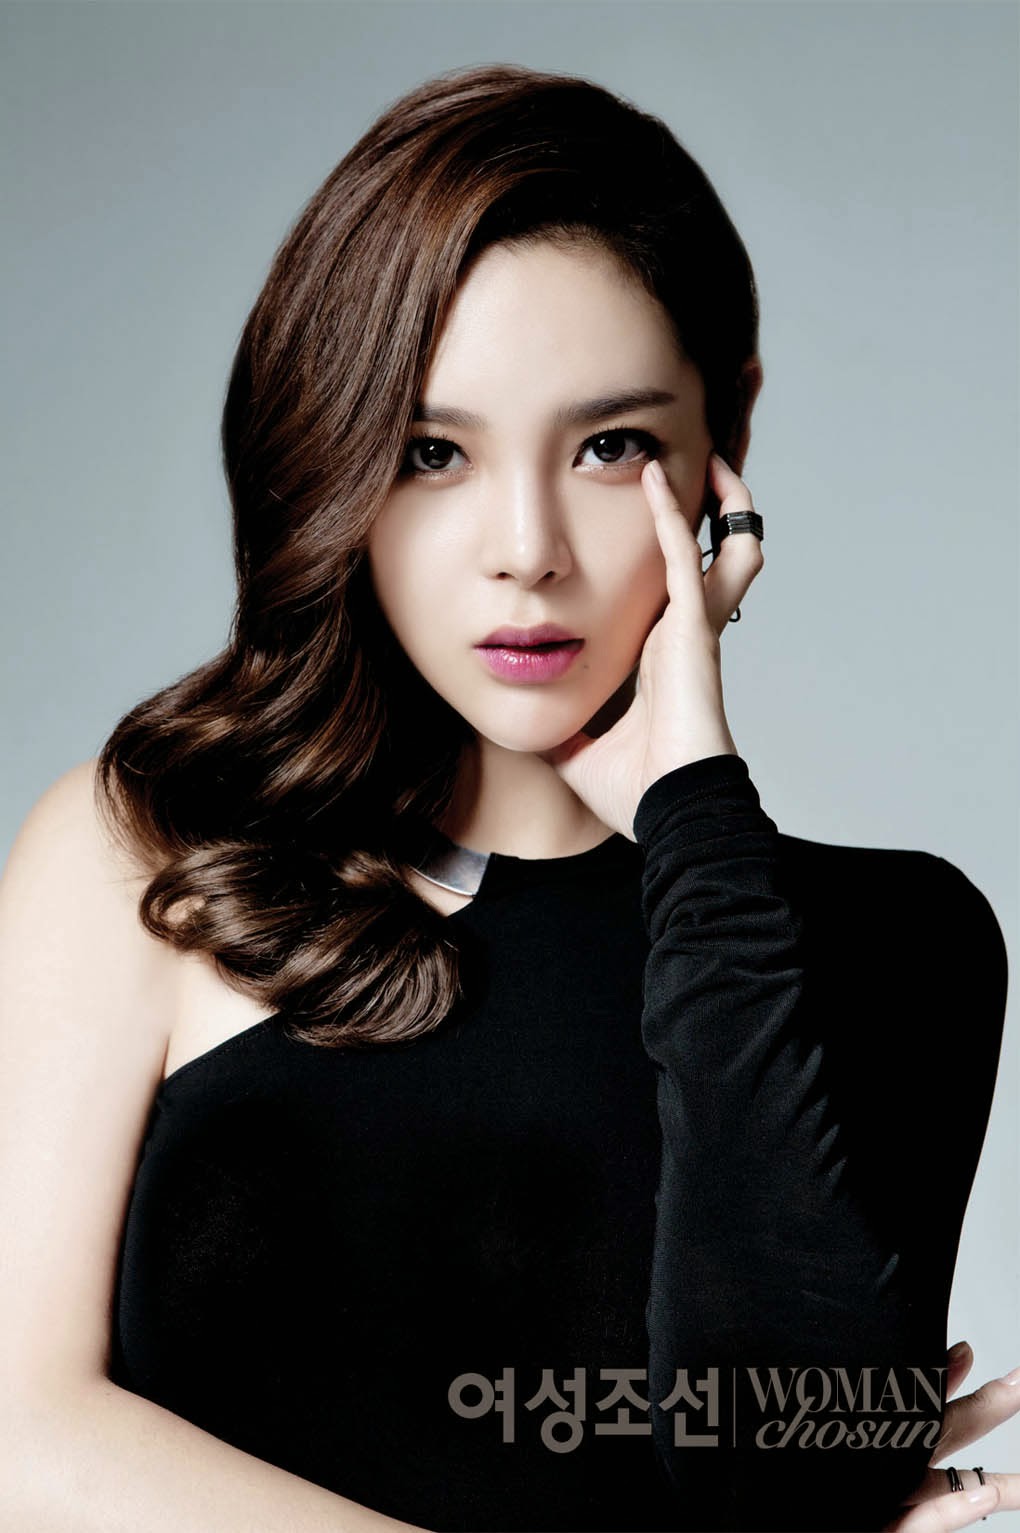 Park Si Yeon is an Elegant Enchantress for Woman Chosun 